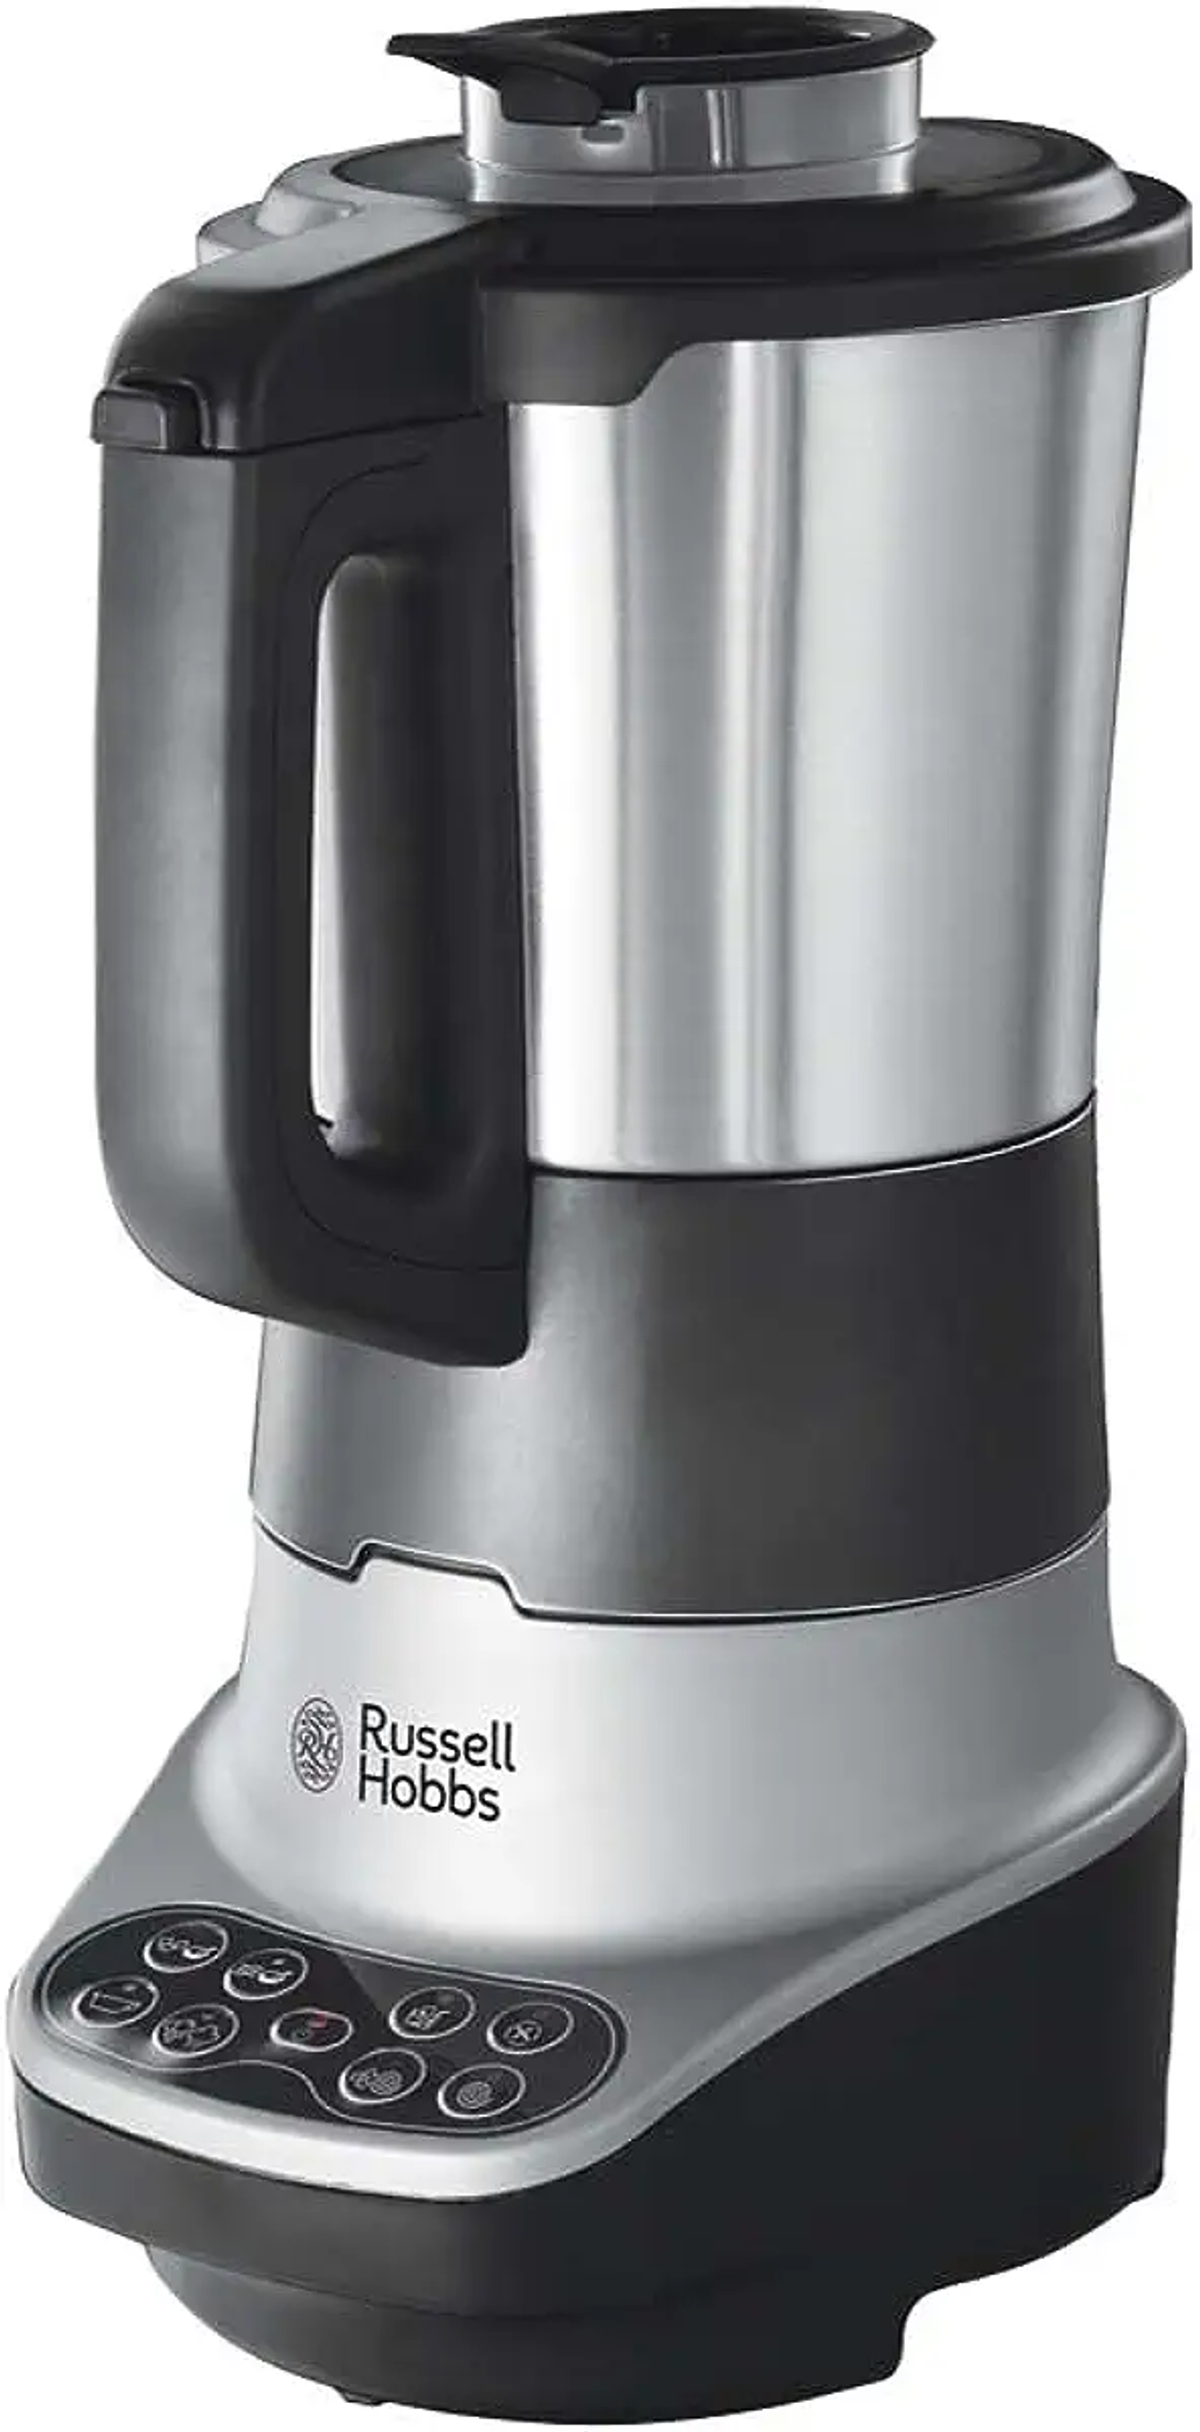 RUSSELL HOBBS 1.75 (800 SOUP&BLEND 21480-56 Watt, Schwarz/Edelstahl l) Standmixer